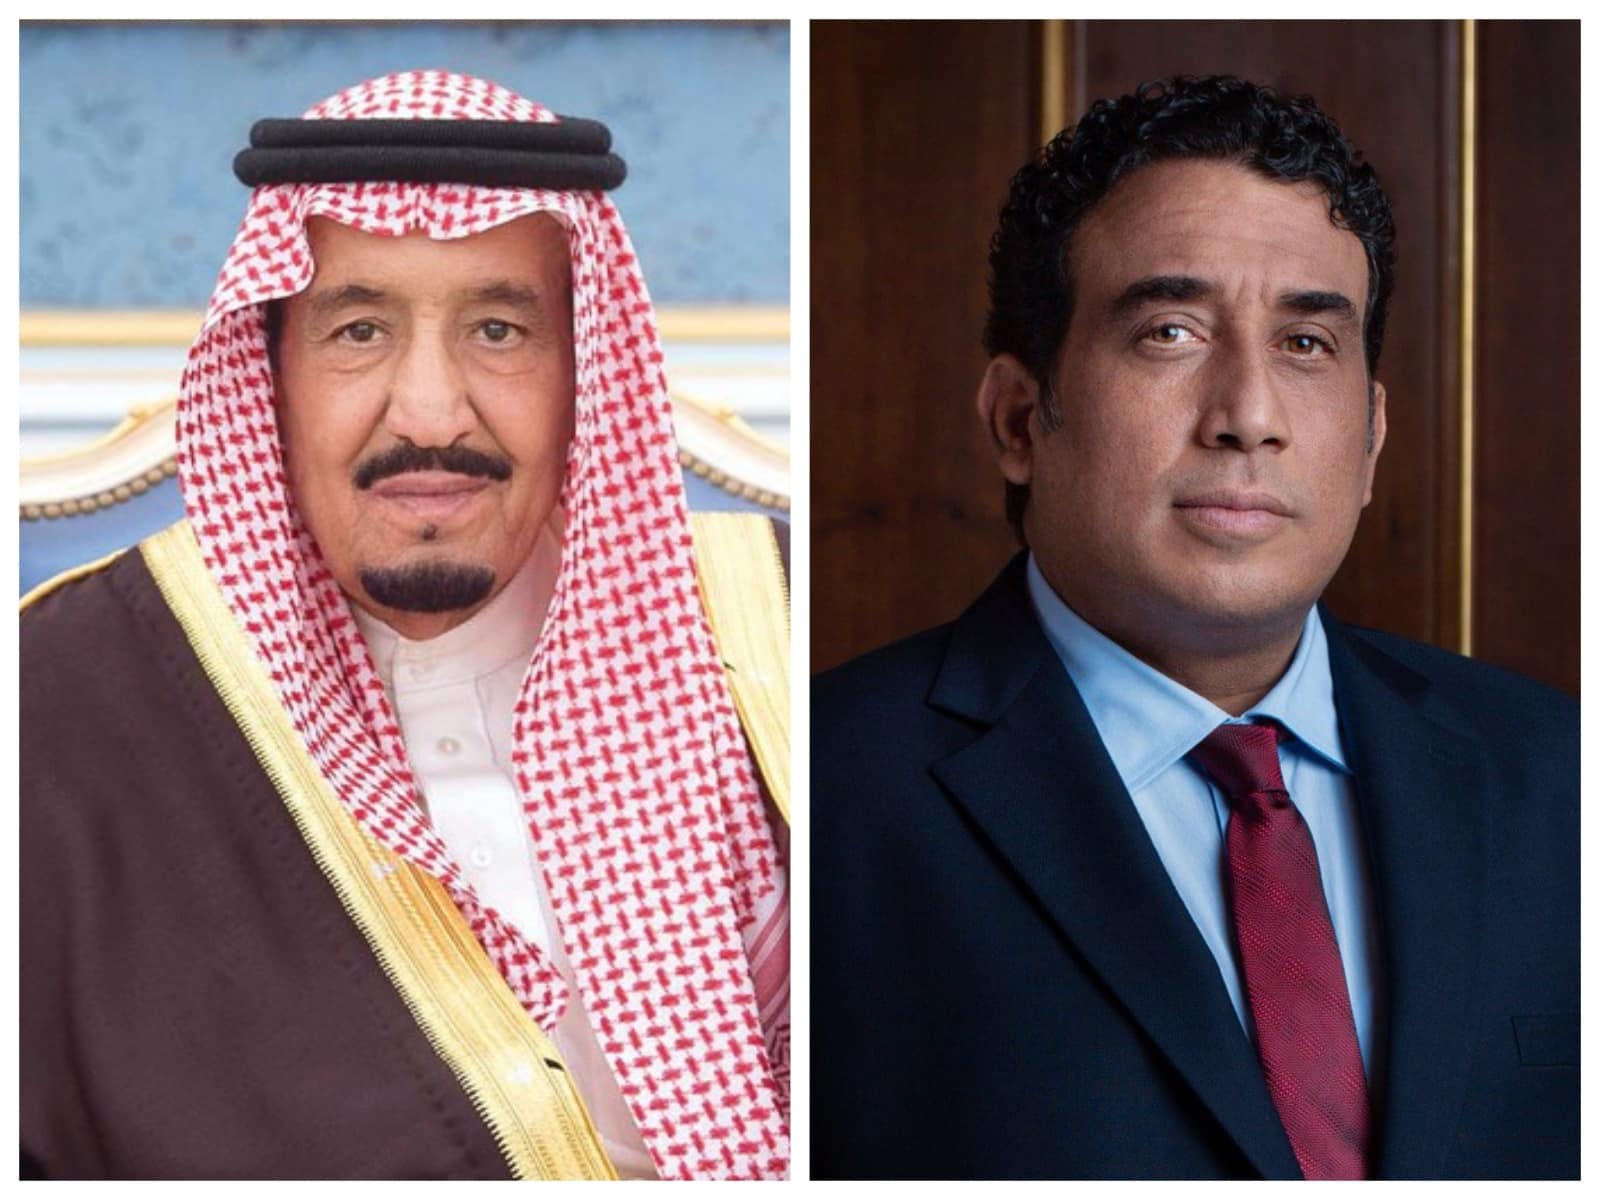 رئيس المجلس الرئاسي يتلقى تهنئة بمناسبة شهر رمضان من الملك سلمان بن عبد العزيز آل سعود